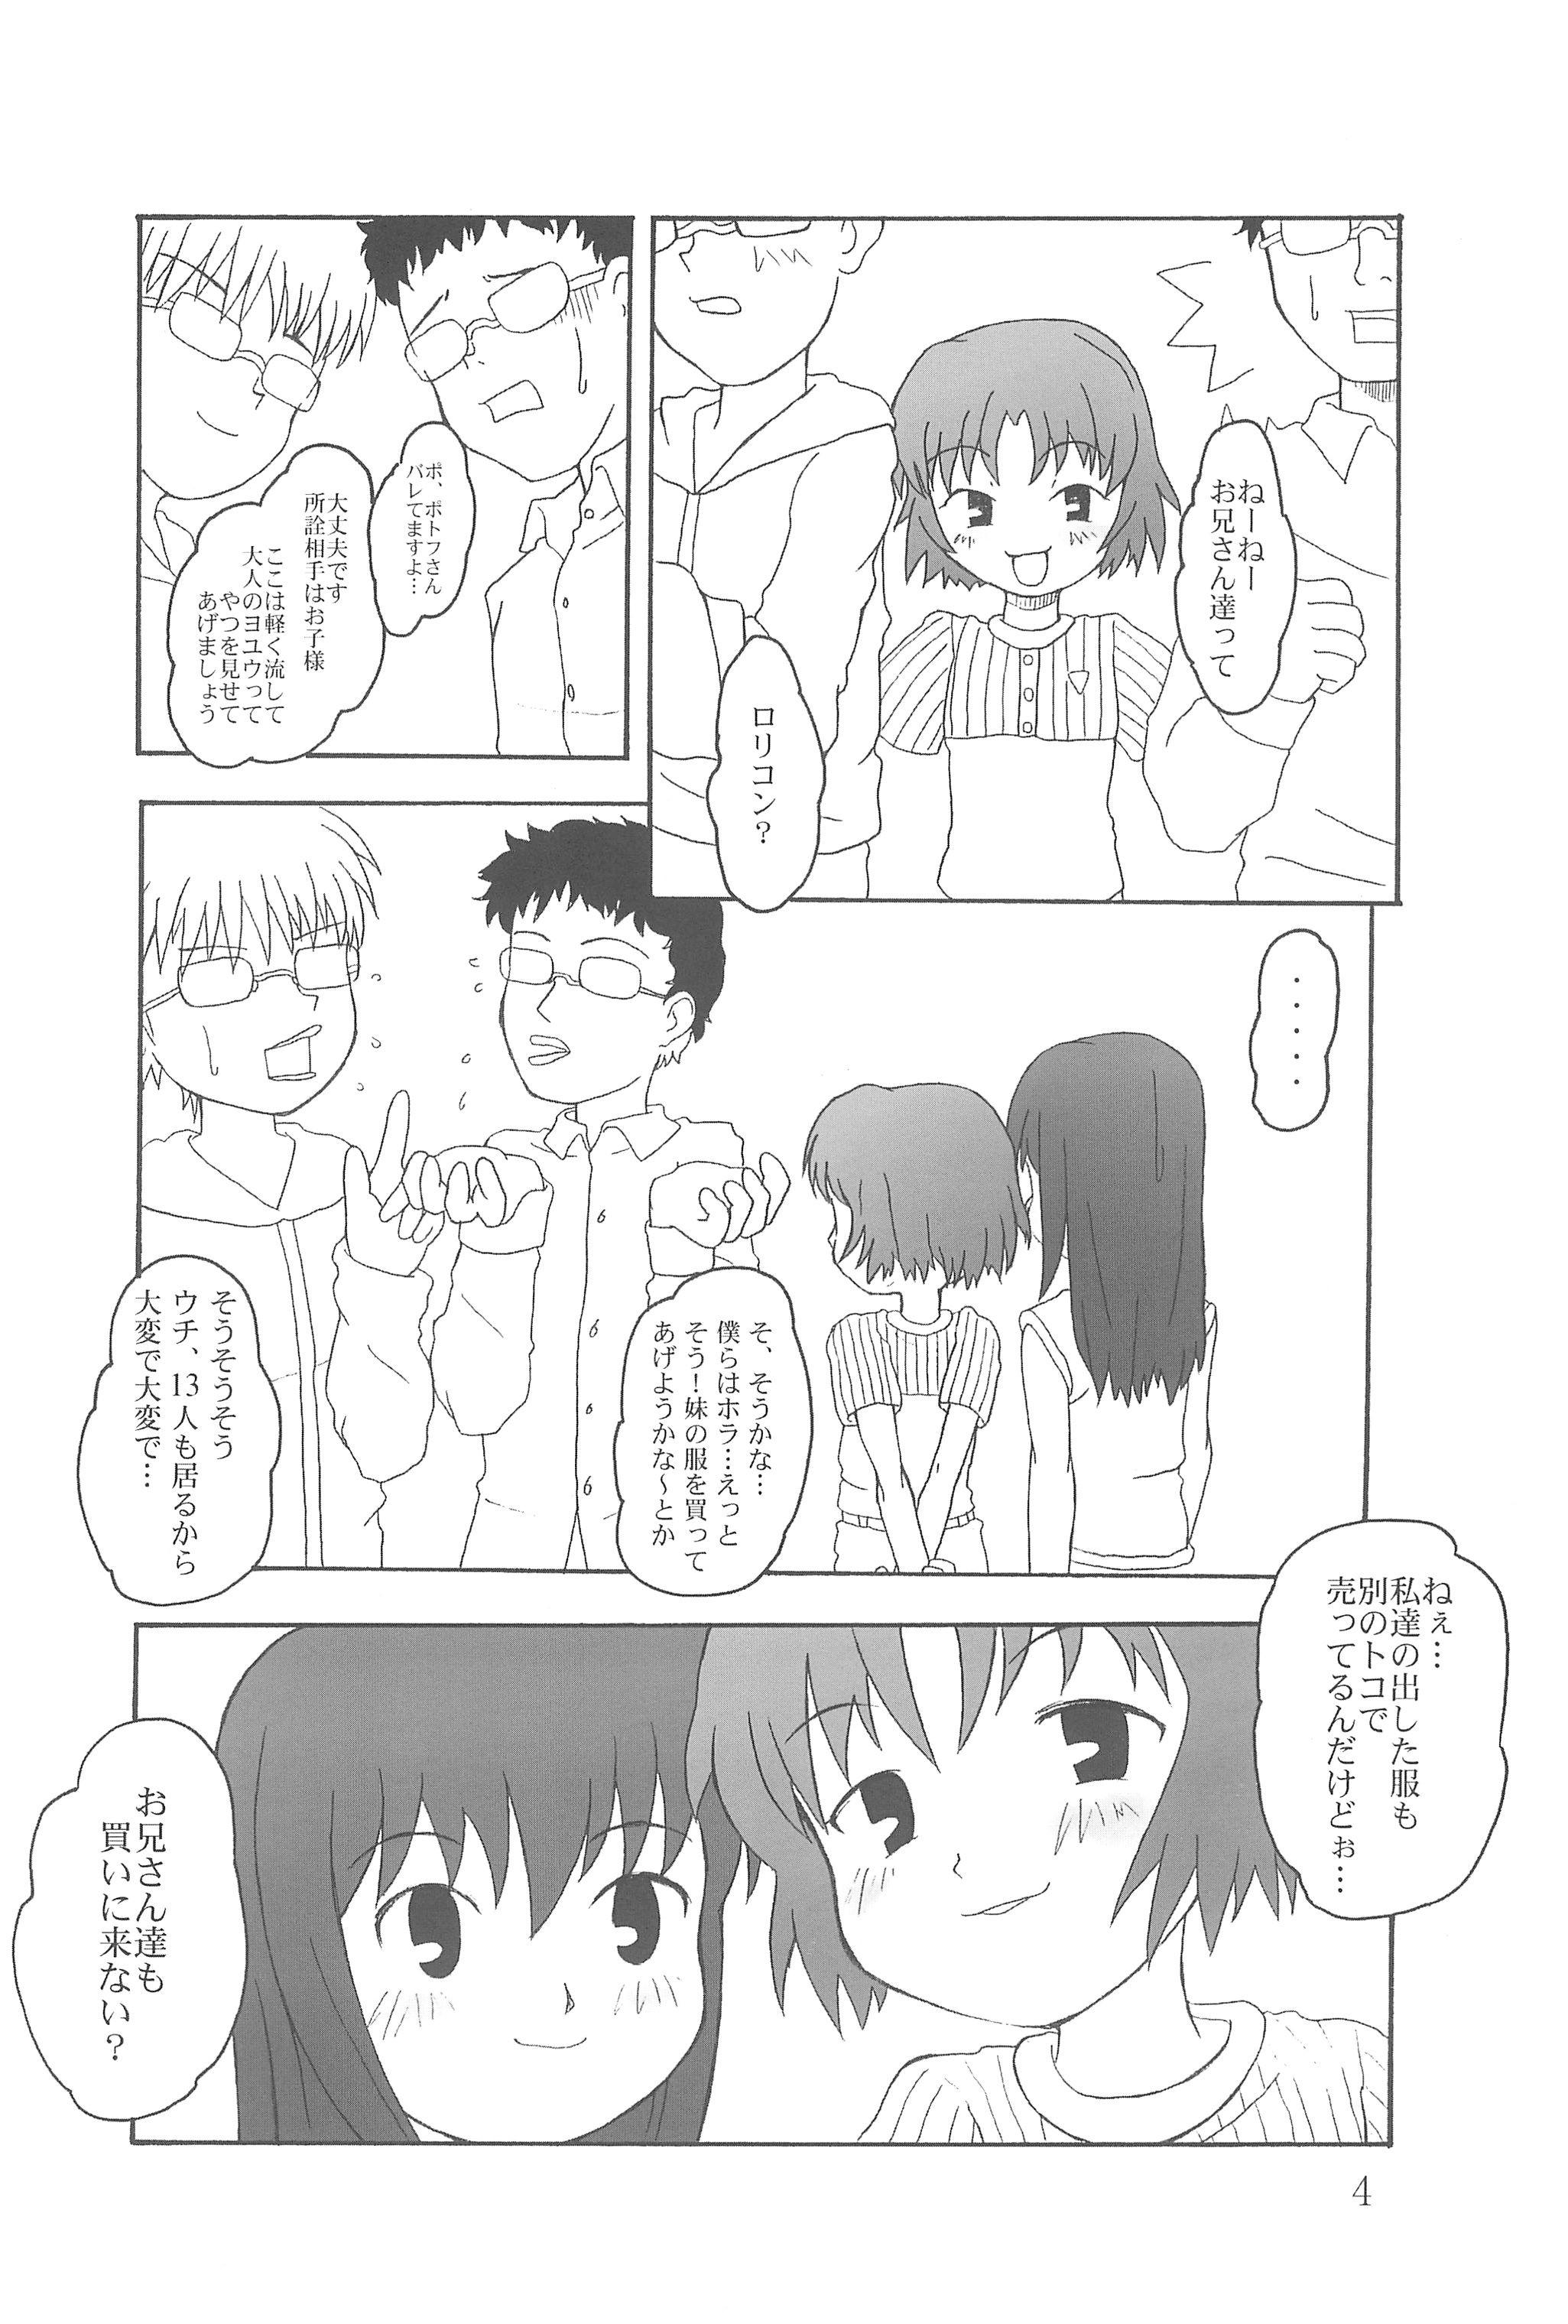 Skype Hontou ni Attara Eroi Hanashi Class Room - Page 4